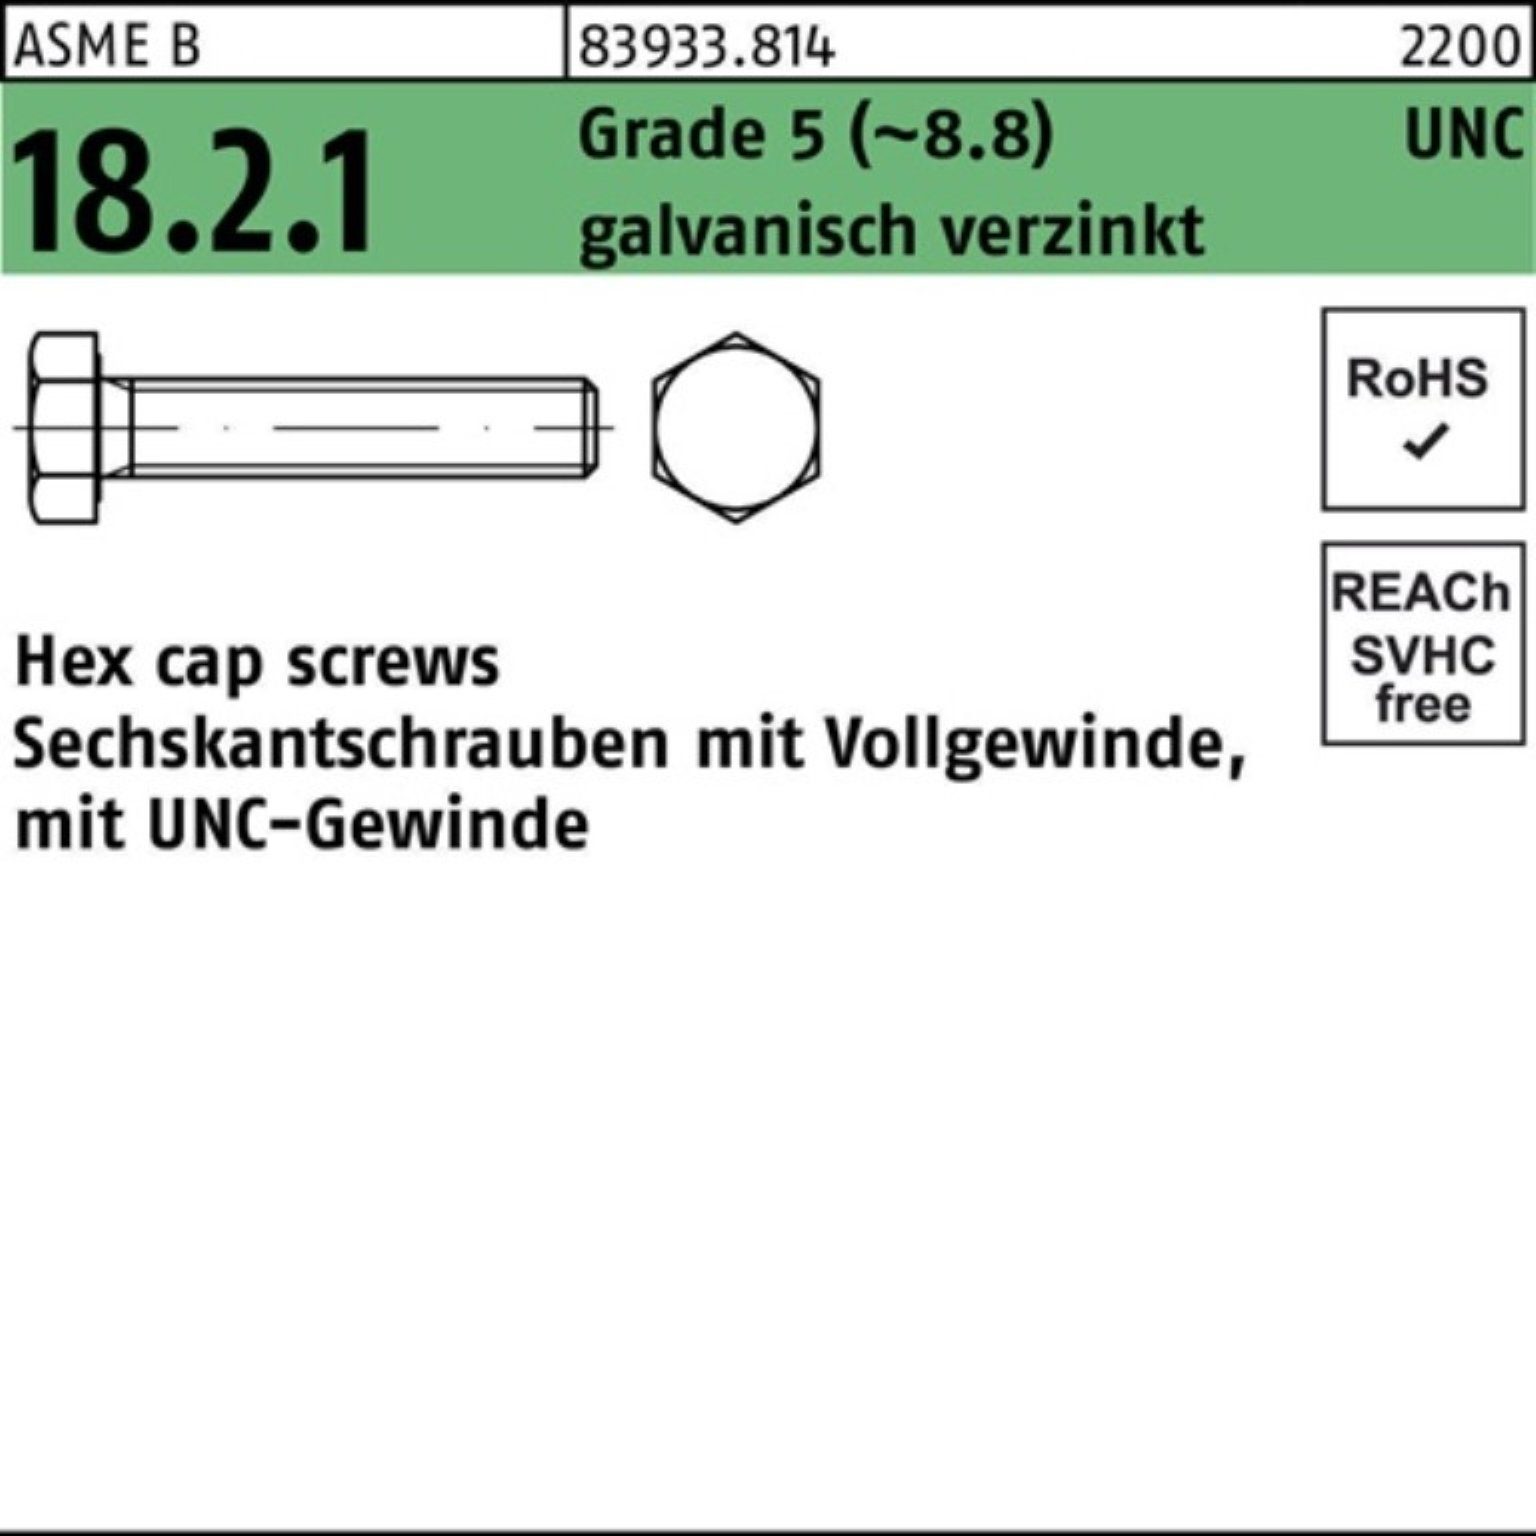 Reyher Sechskantschraube 100er Pack Sechskantschraube R 83933 UNC VG 1/4x3/4 Grade 5 (8.8) gal